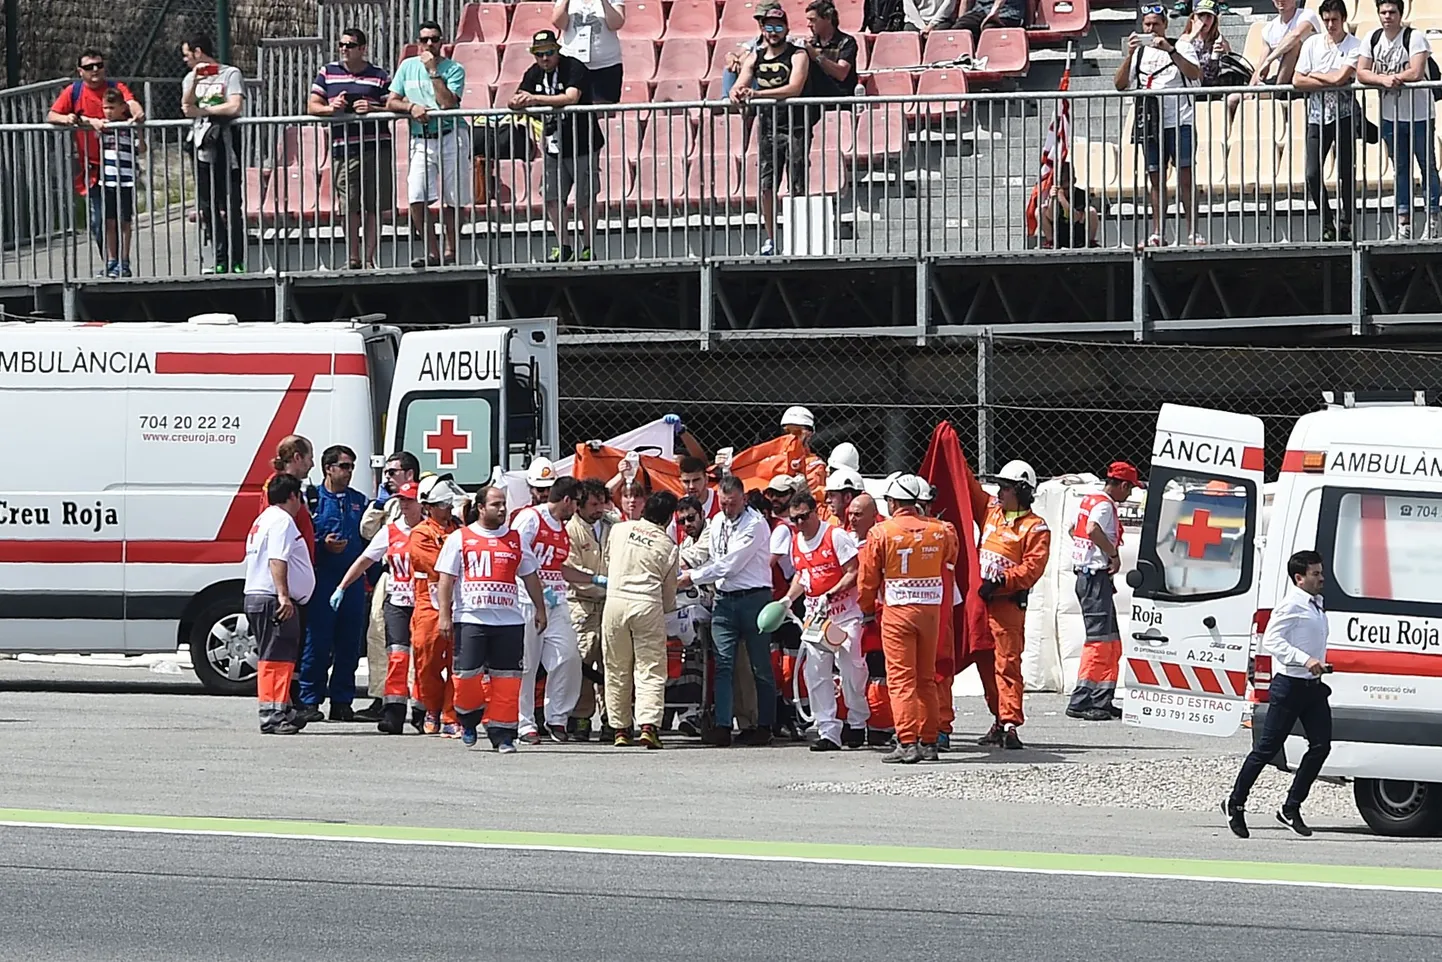 Kataloonias peetud mootorrataste ringrajasõidu MM-etapil hukkus 24-aastane Luis Salom.